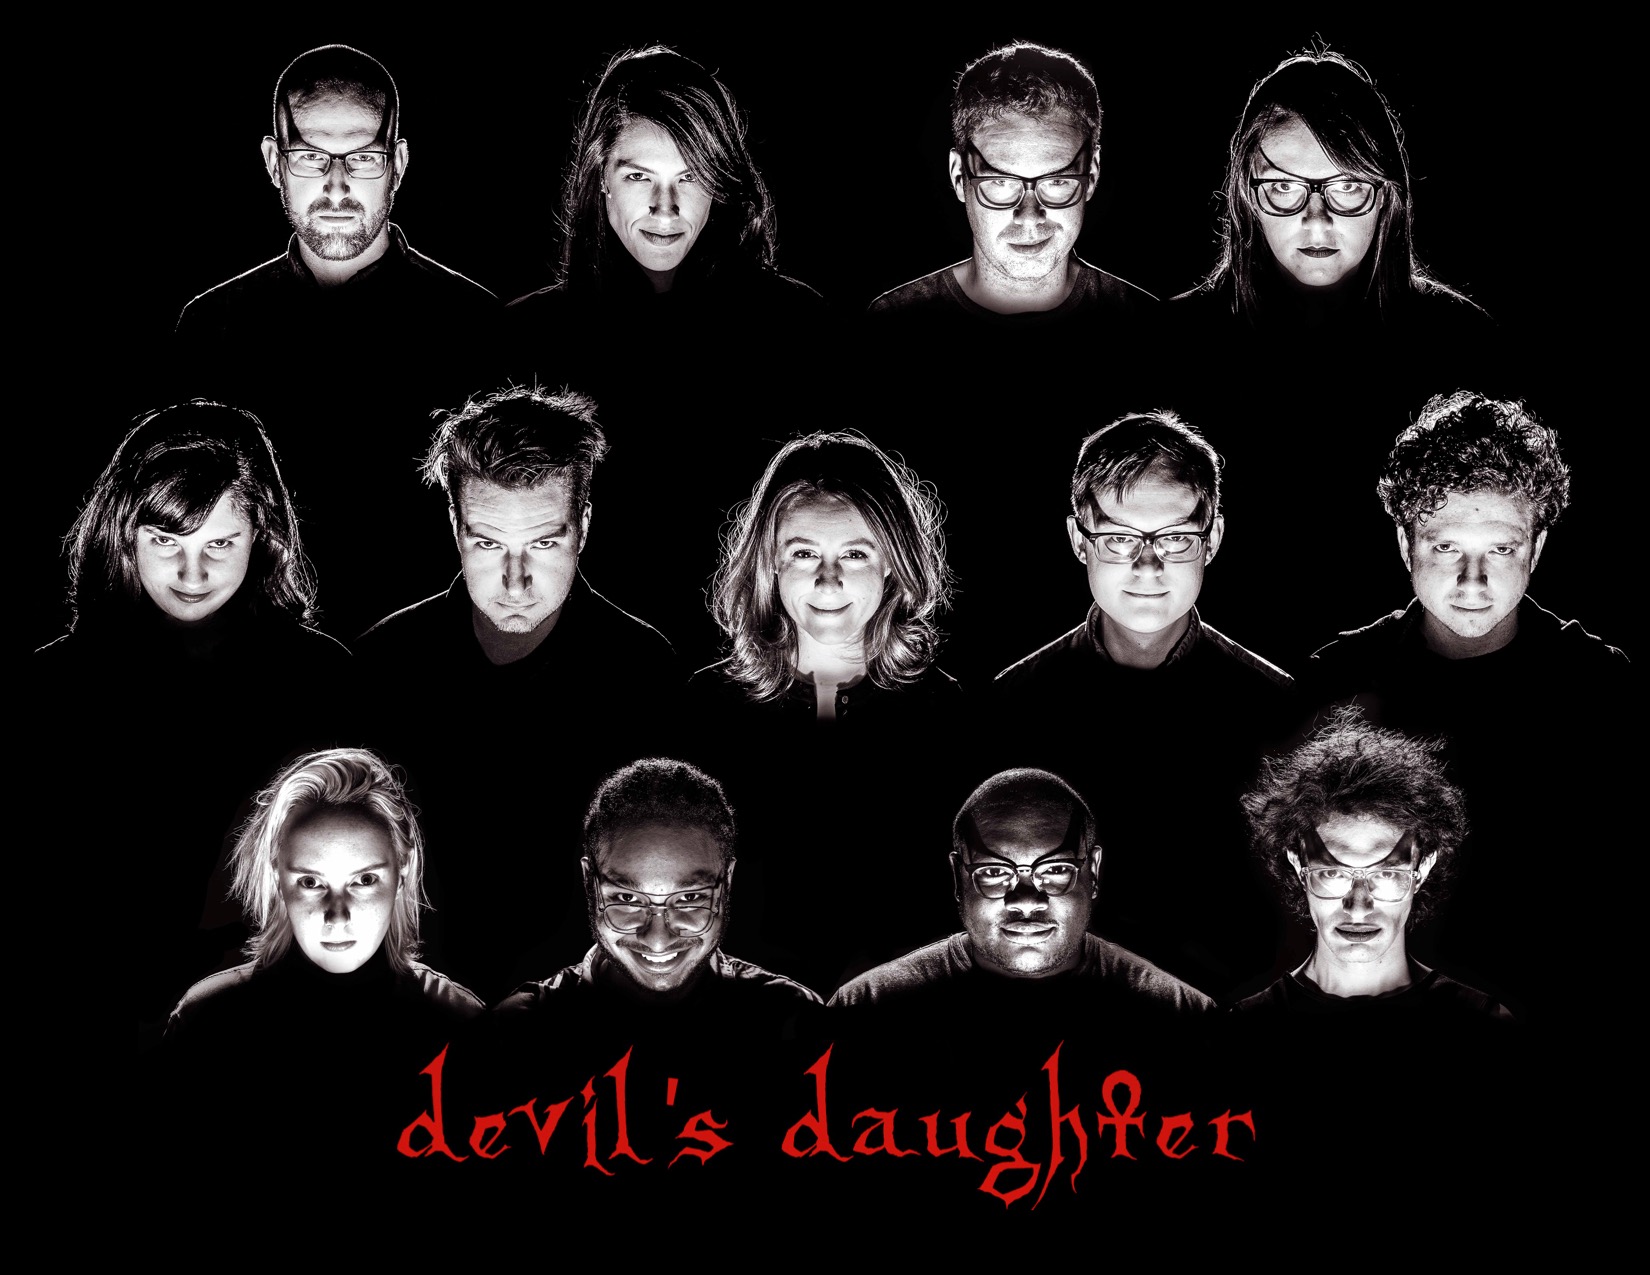 Devils Daughter